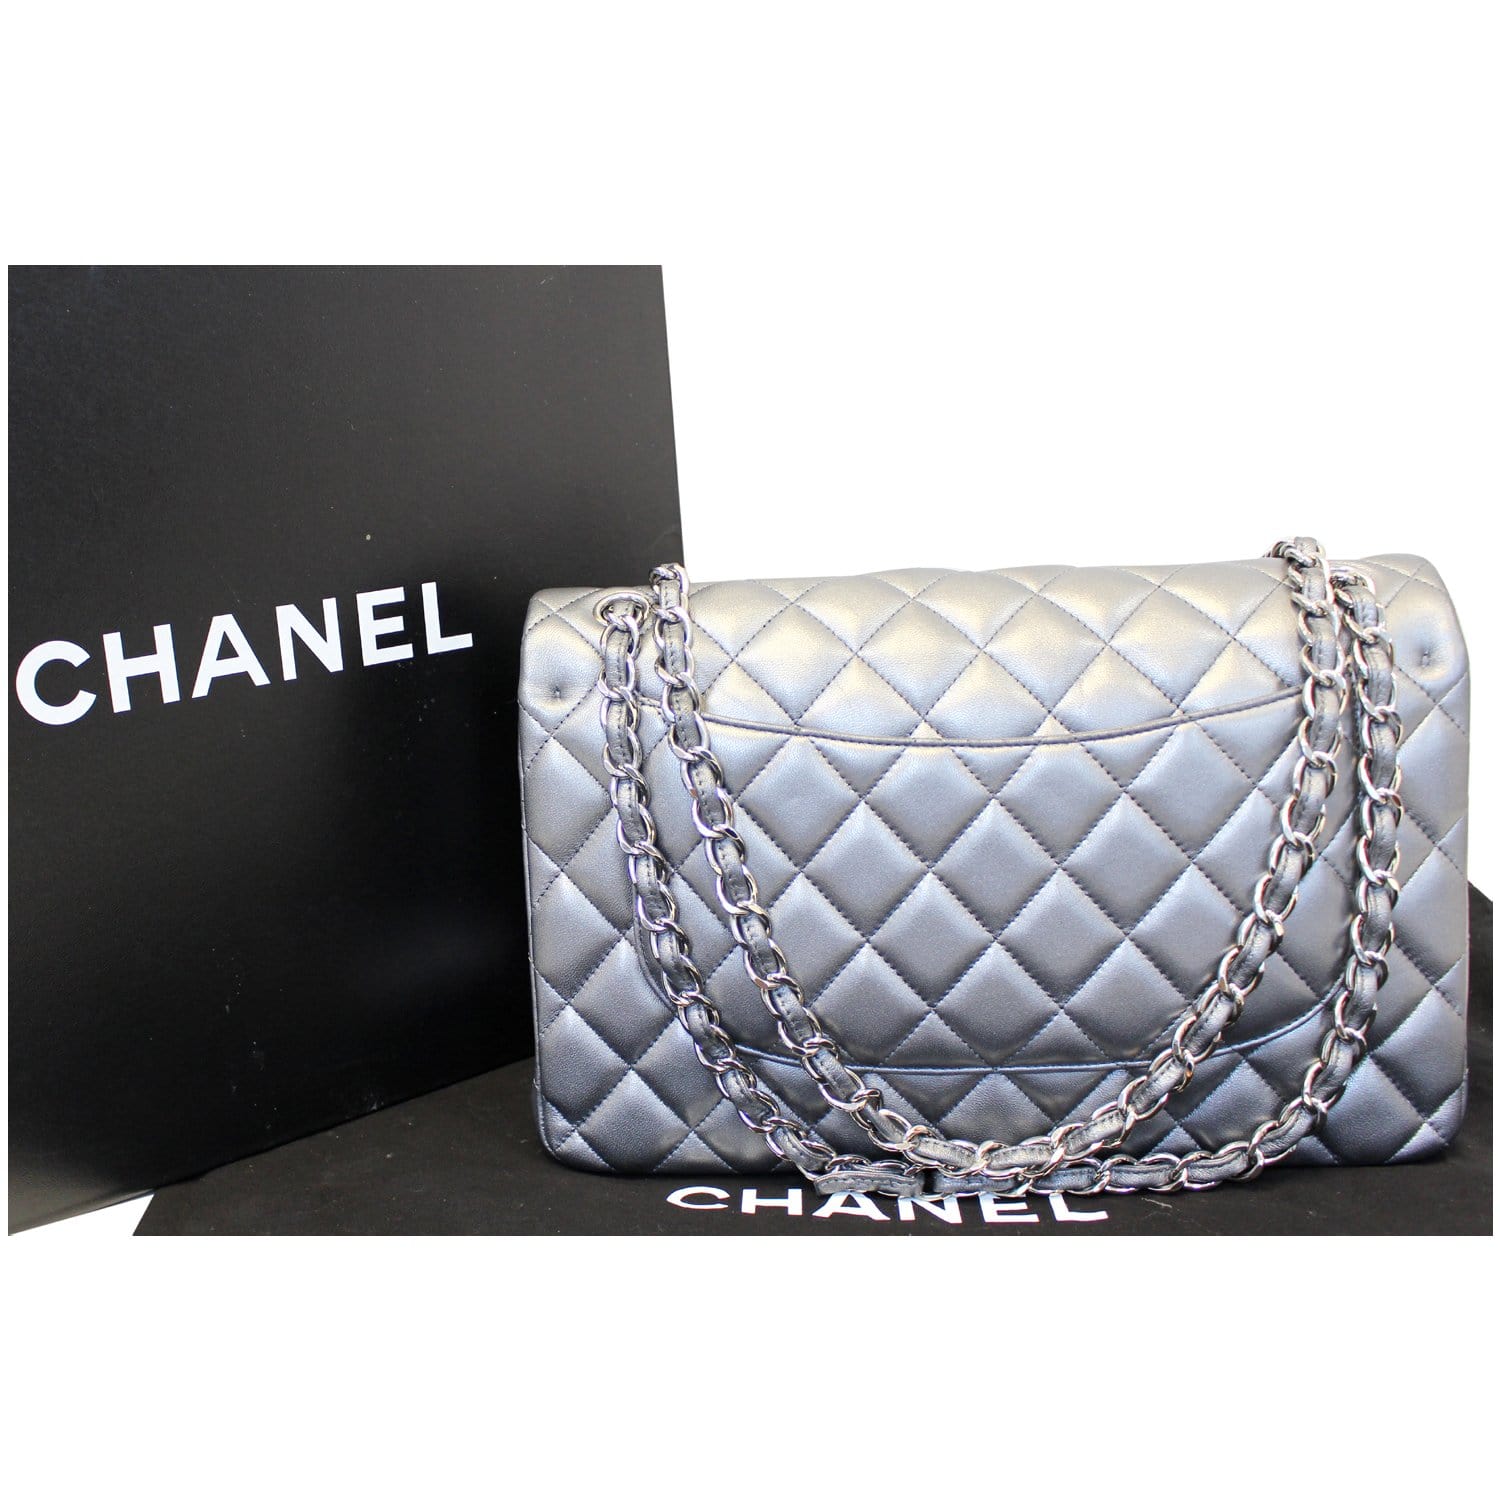 Download Handbag Leather Chanel Red Bag Free Transparent Image HQ